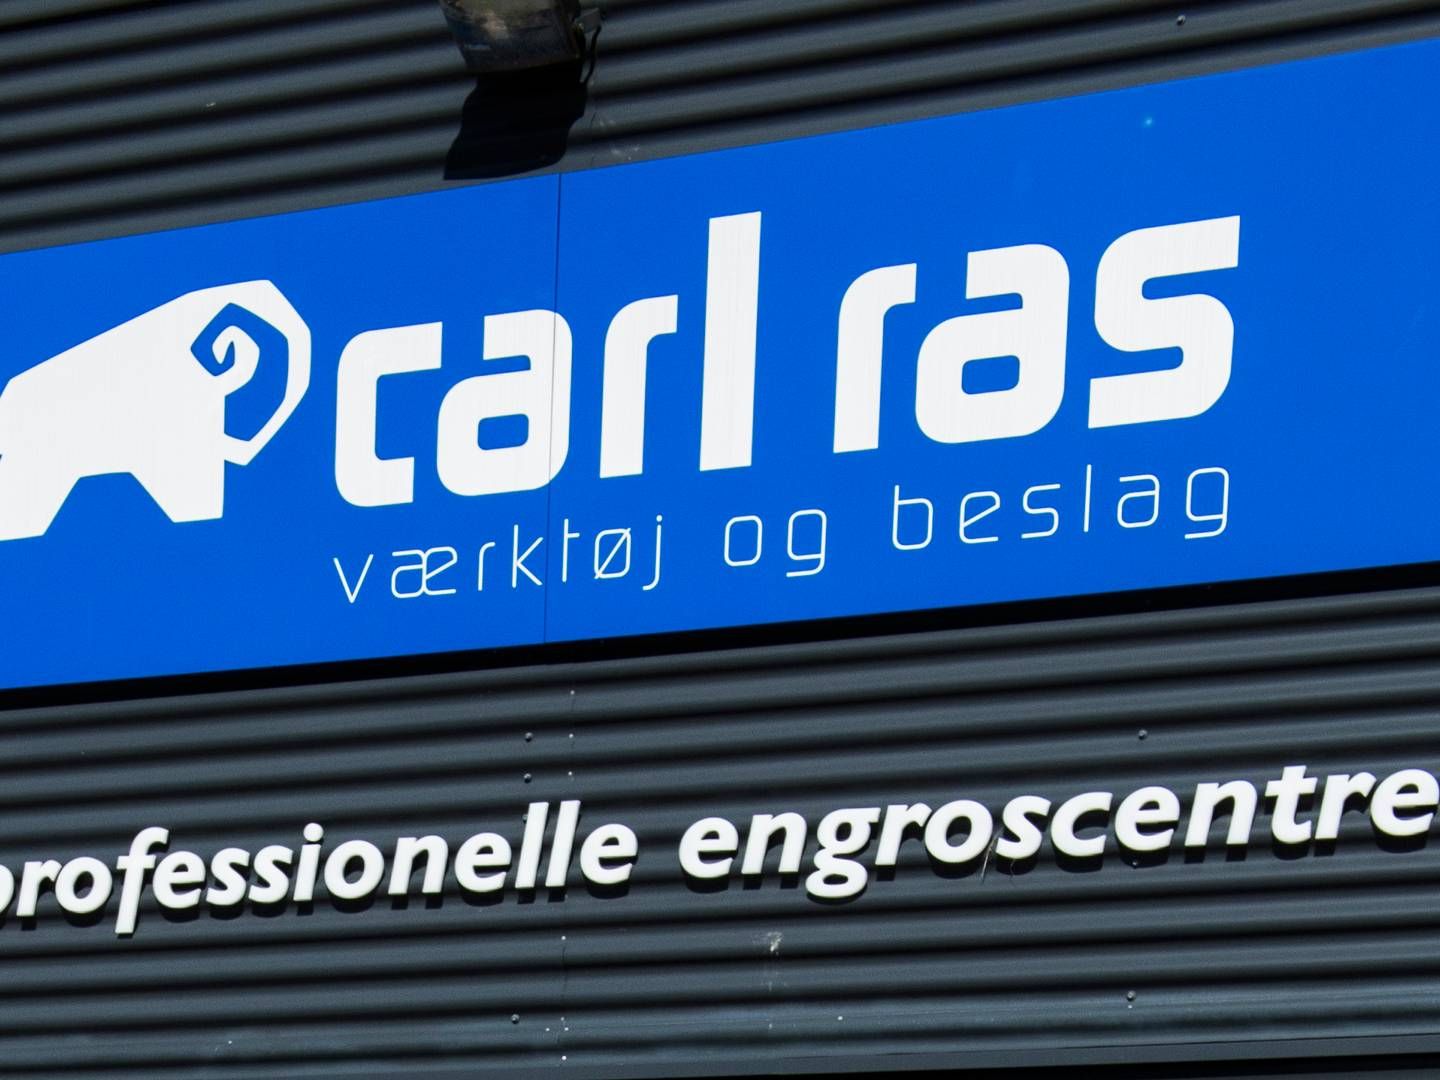 Den familieejede virksomhed Carl Ras blev etableret i 1932 og fejrede dermed 90-års fødselsdag i 2022. | Foto: Jesper Mortensen